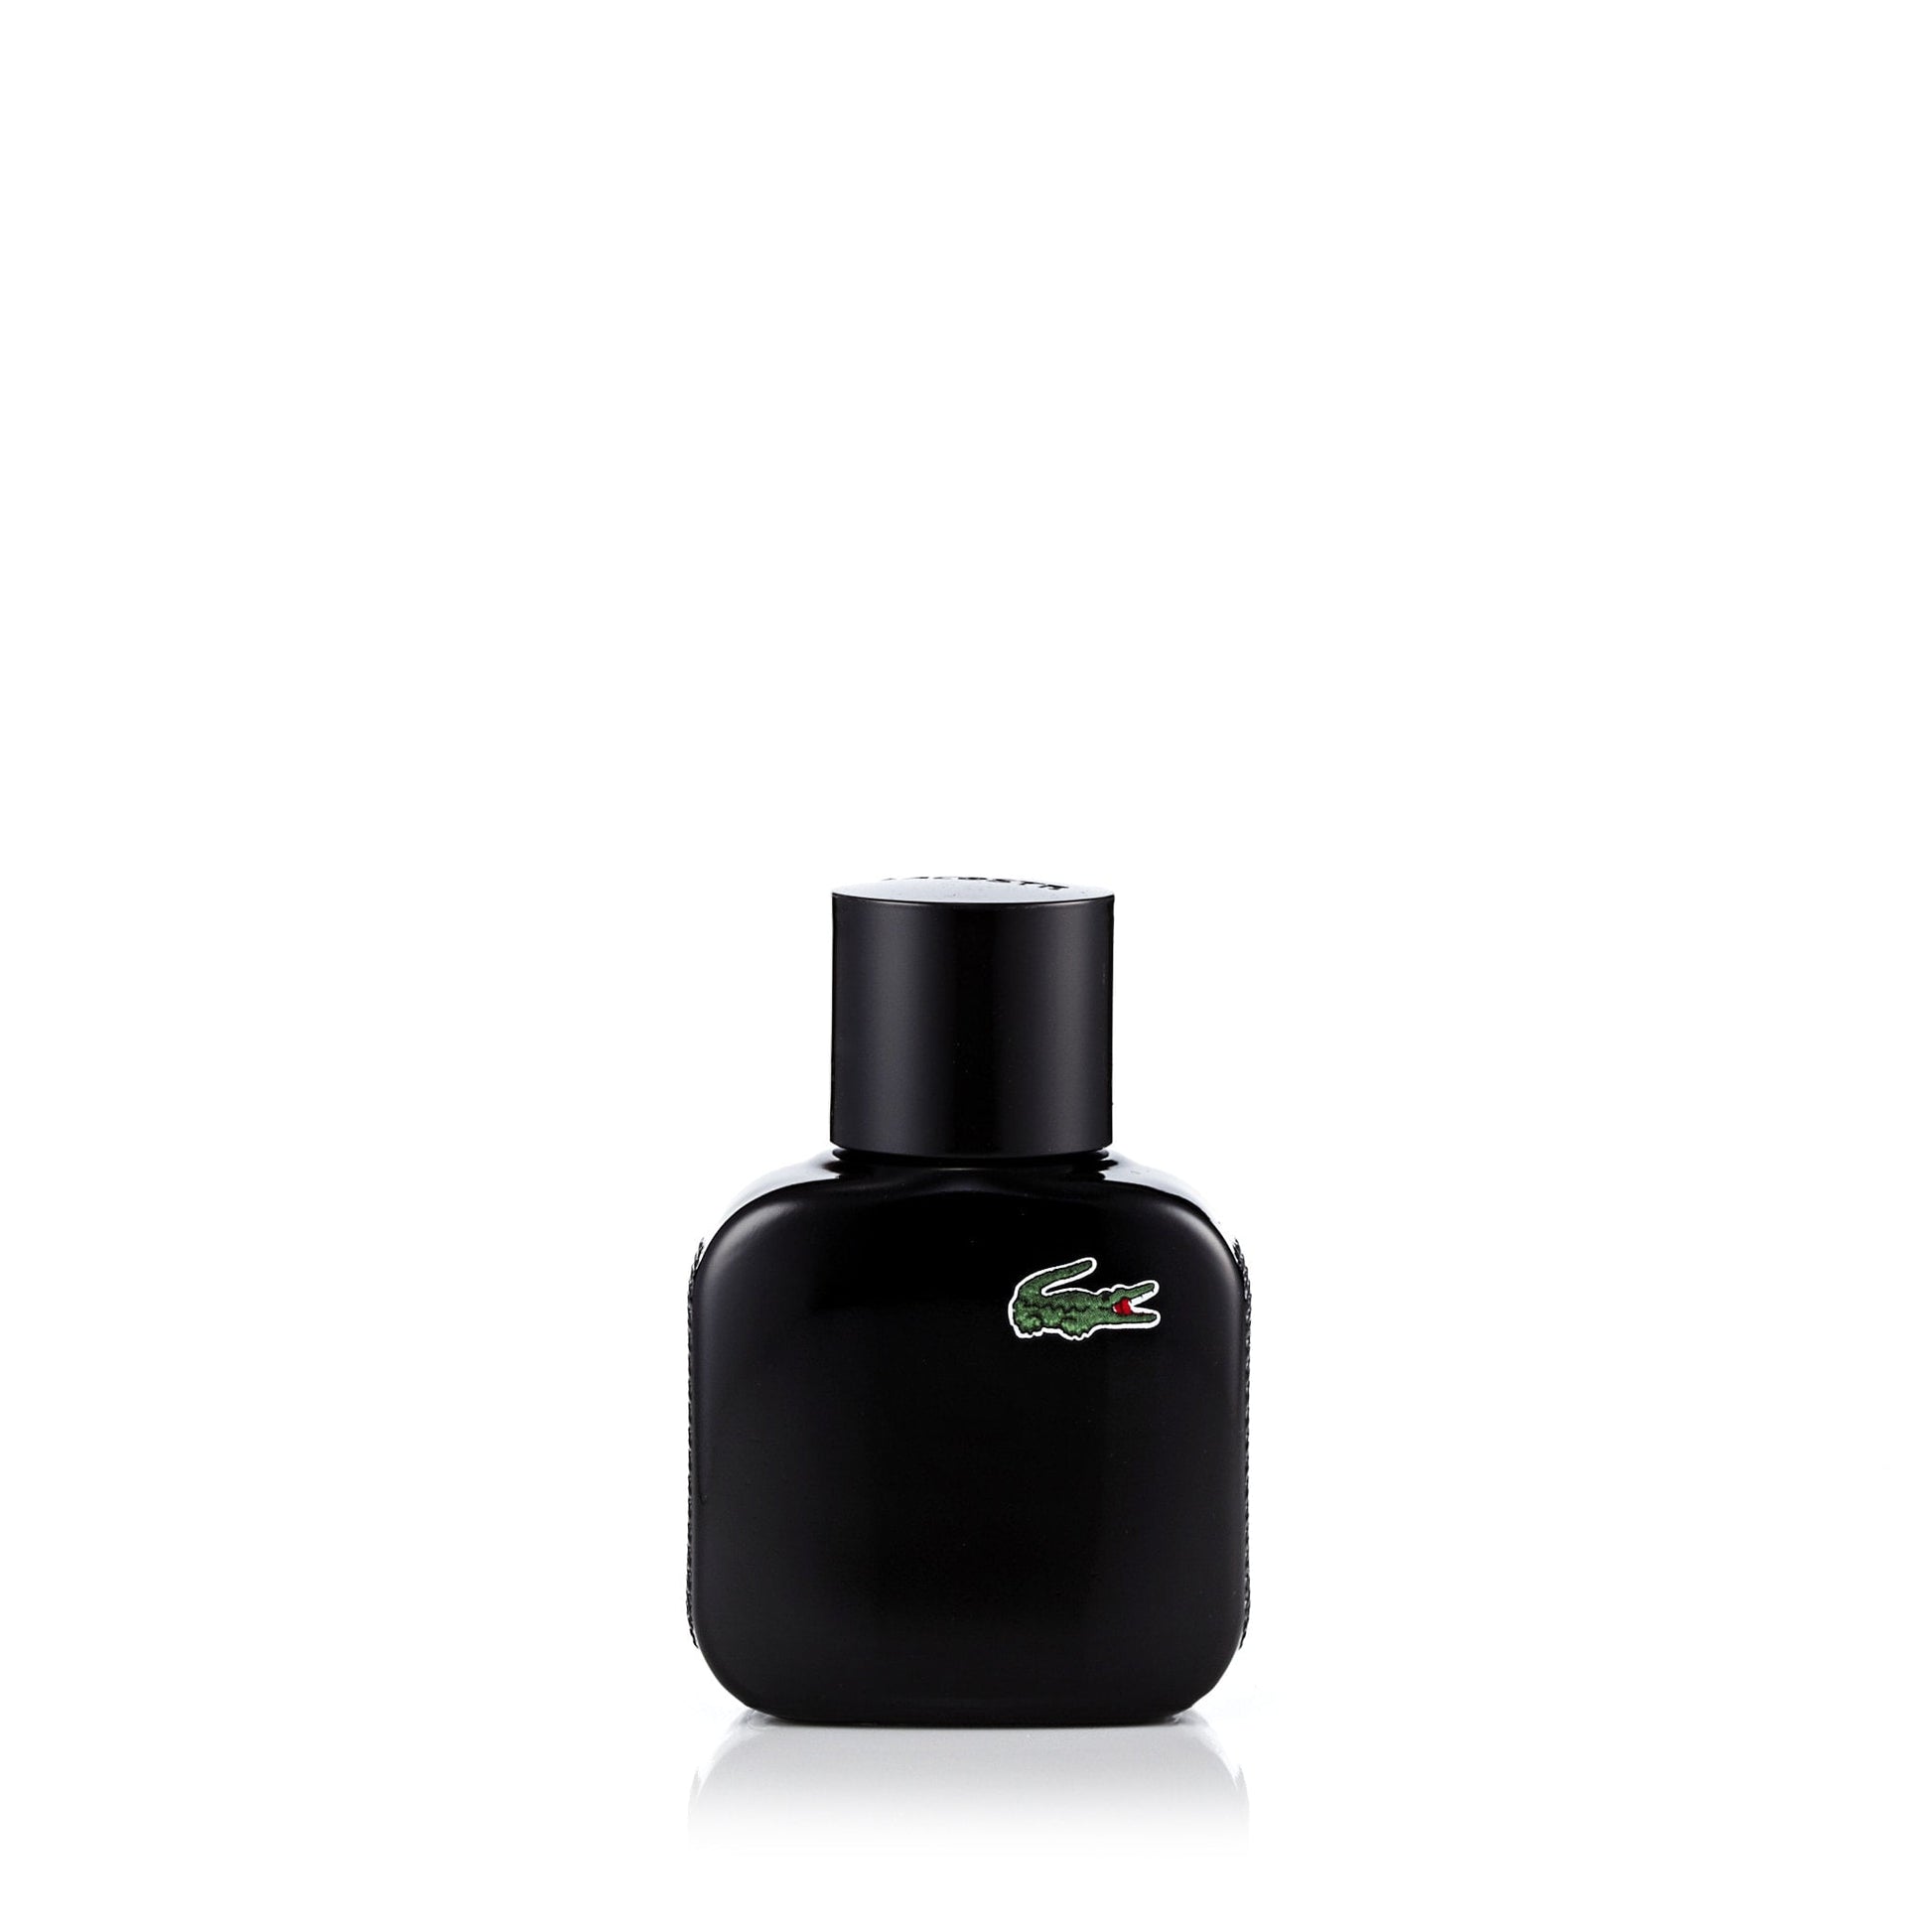 L.12.12 Noir Eau de Toilette Spray for Men by Lacoste, Product image 4